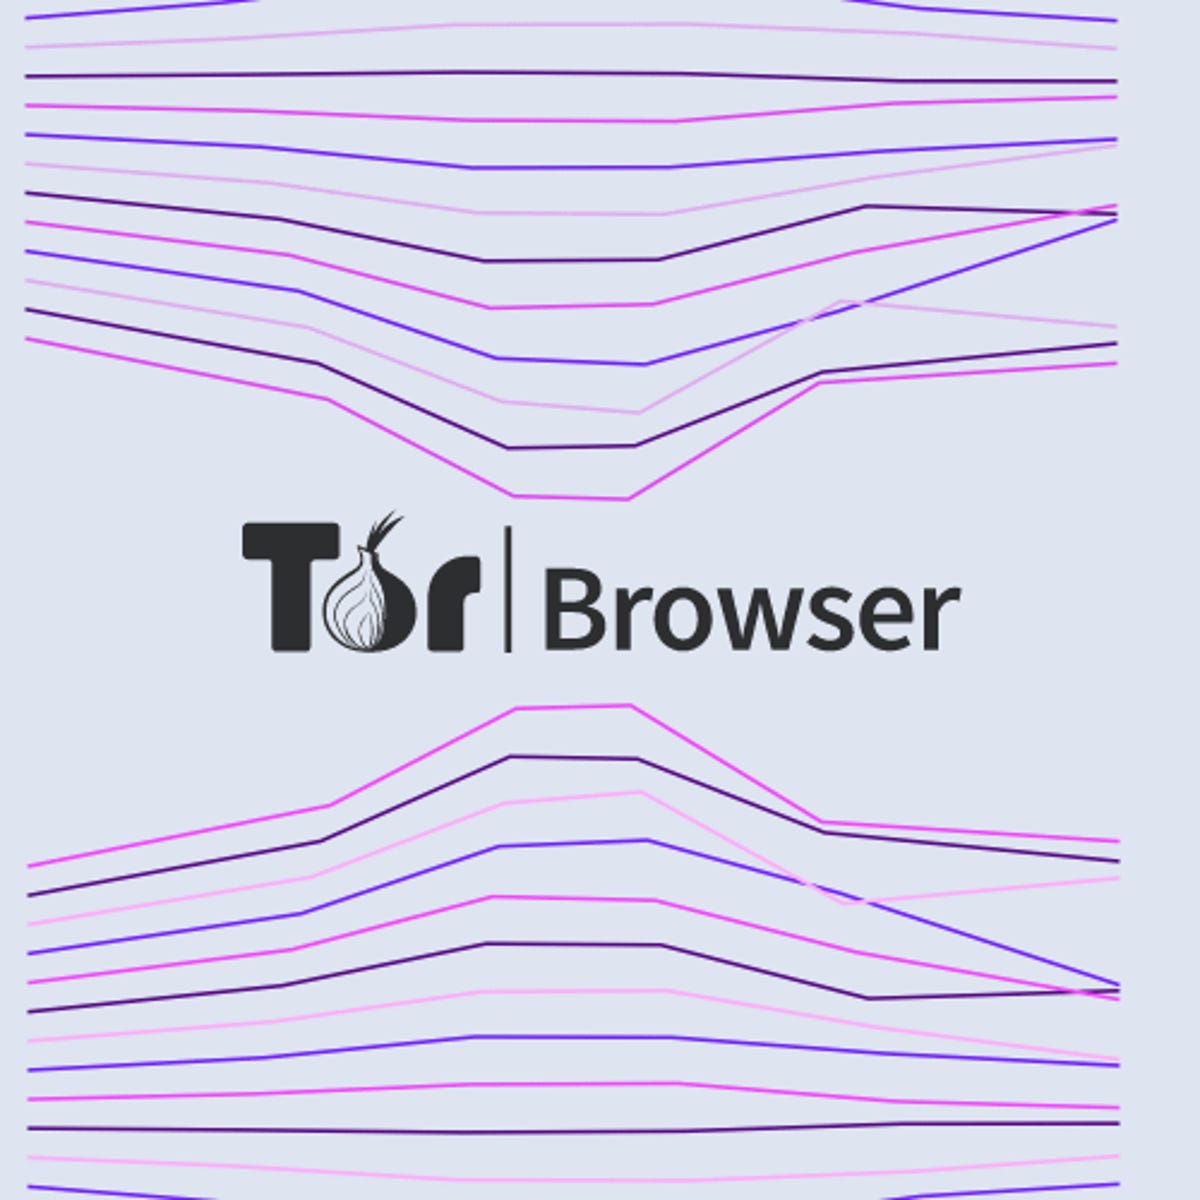 Tor browser secure hyrda кекс из марихуаны рецепт